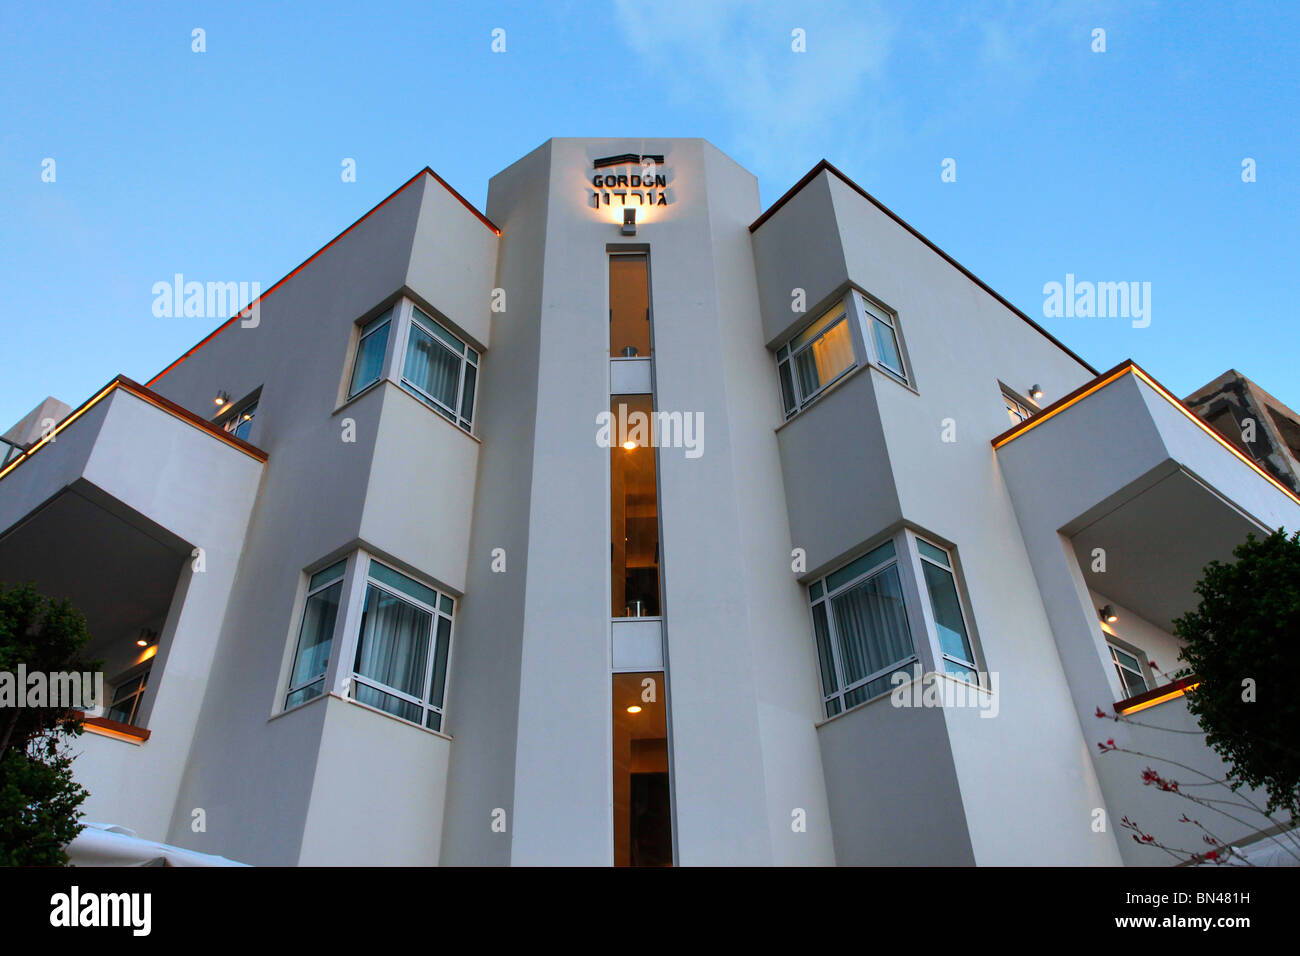 Un bâtiment rénové qui a été construit dans les années 1930 dans l'architecture du Bauhaus style dans la rue Gordon centre-ville de Tel Aviv, Israël. Tel Aviv est un site classé au Patrimoine Mondial pour son architecture unique, le plus grand montant de 'International' des bâtiments de style Bauhaus dans le monde (4000). Banque D'Images